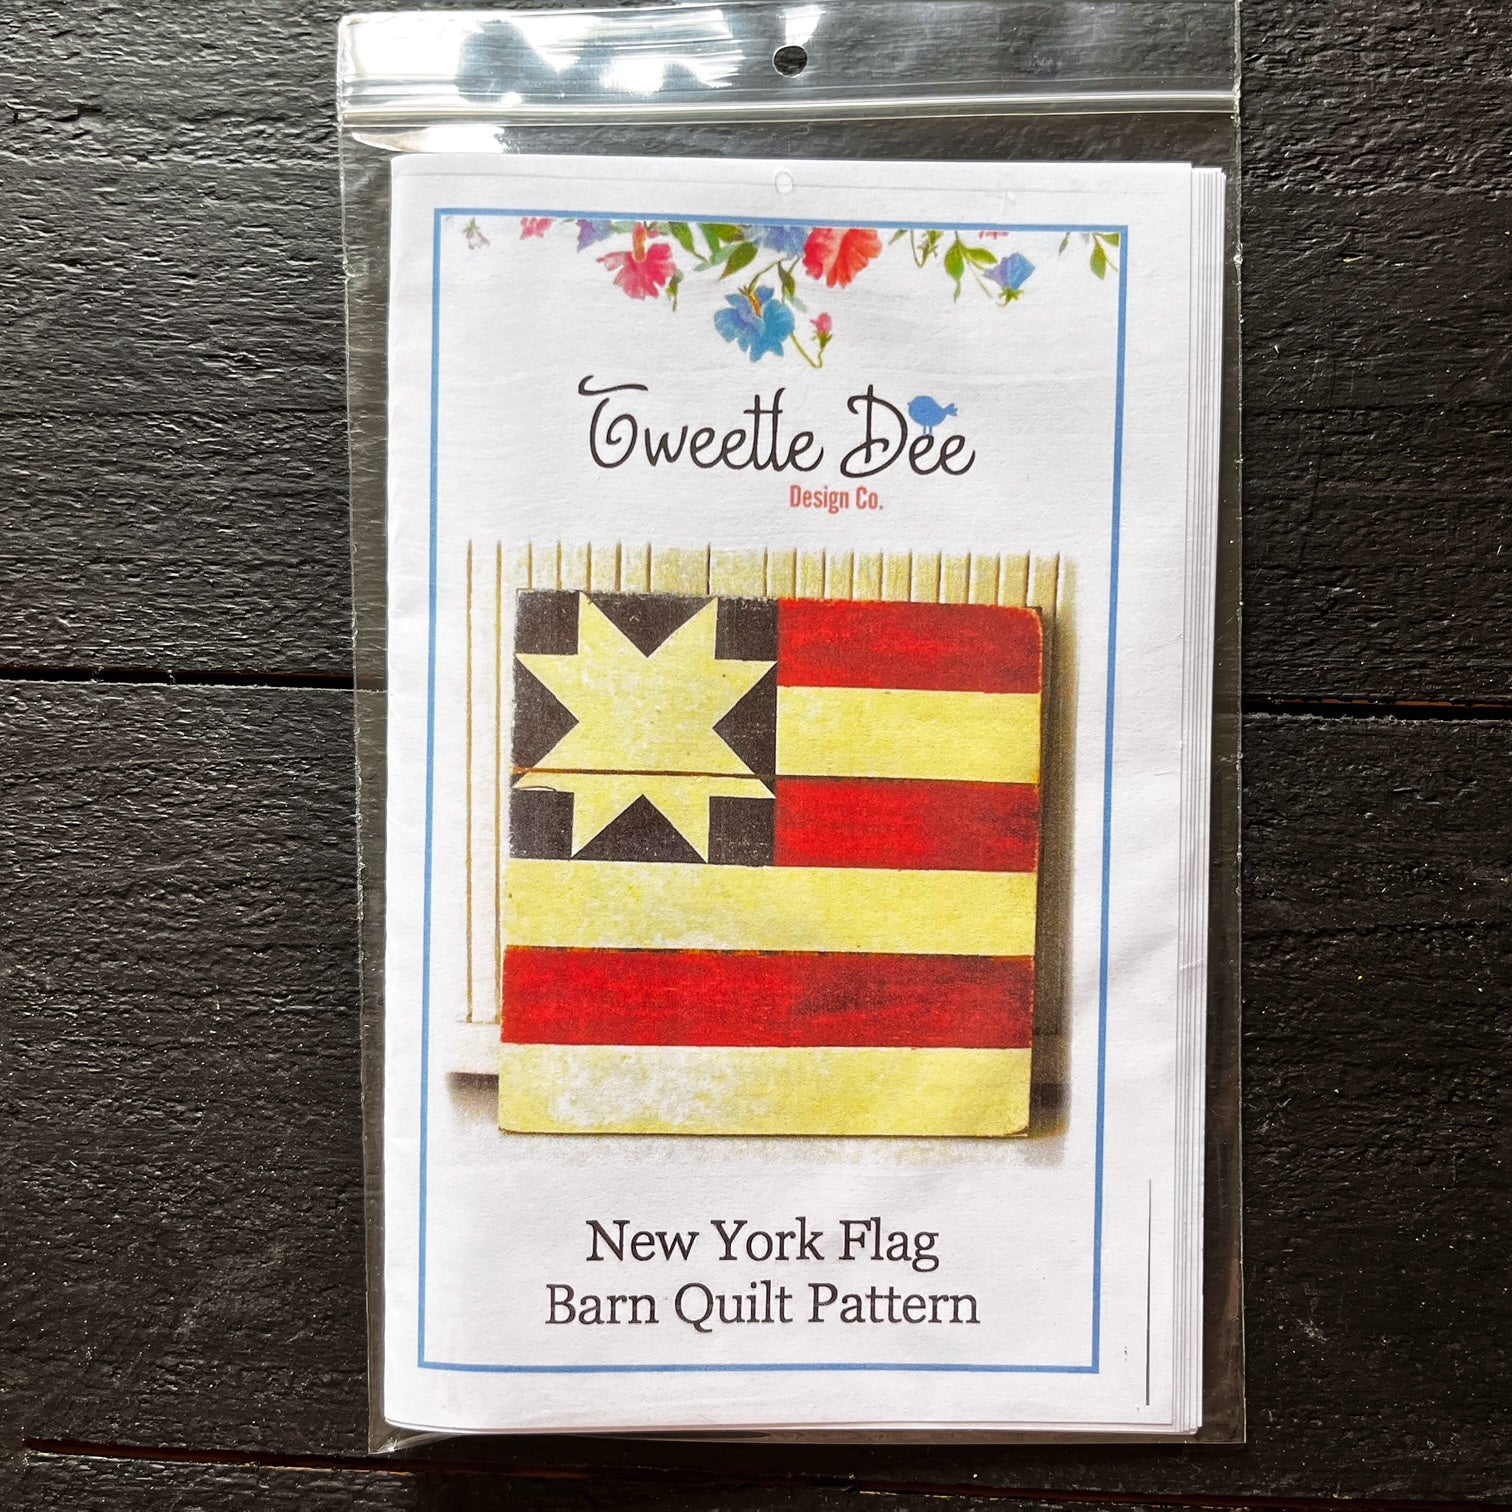 New York Flag Barn Quilt Pattern